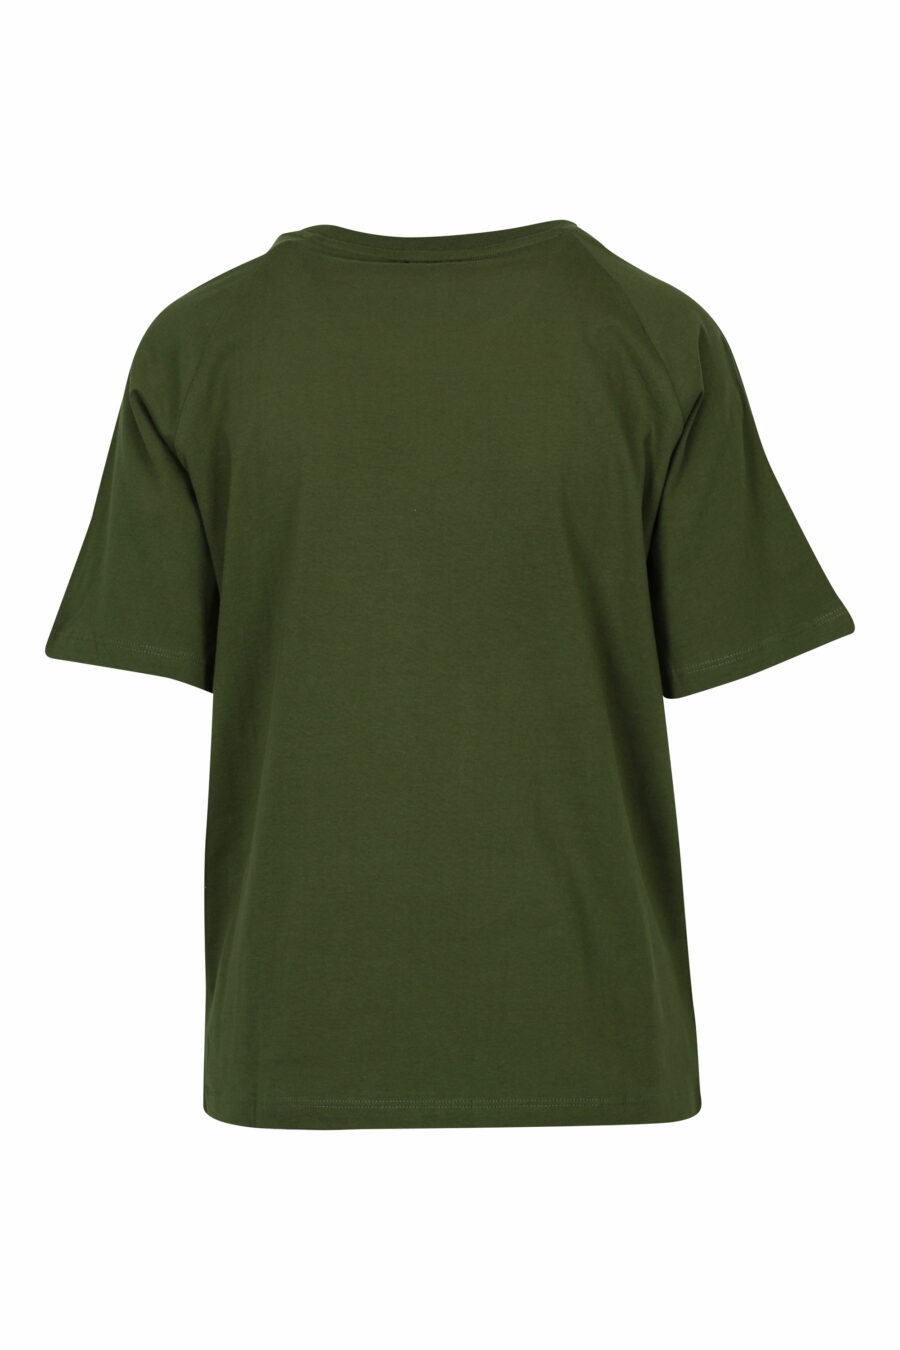 T-shirt verde militar com emblema dourado maxilogo - 8058610852832 1